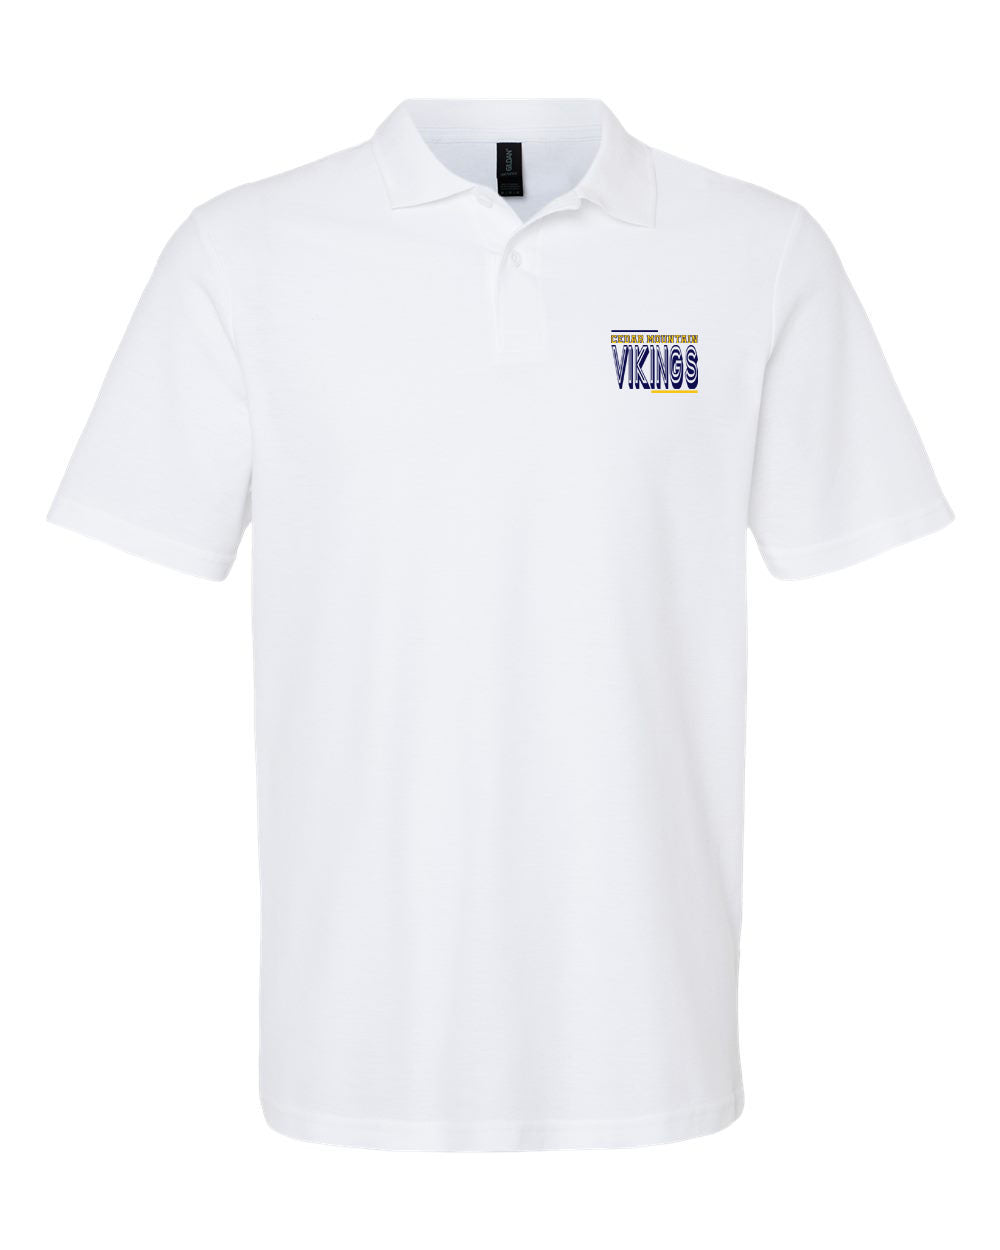 Cedar Mountain Design 2 Polo T-Shirt